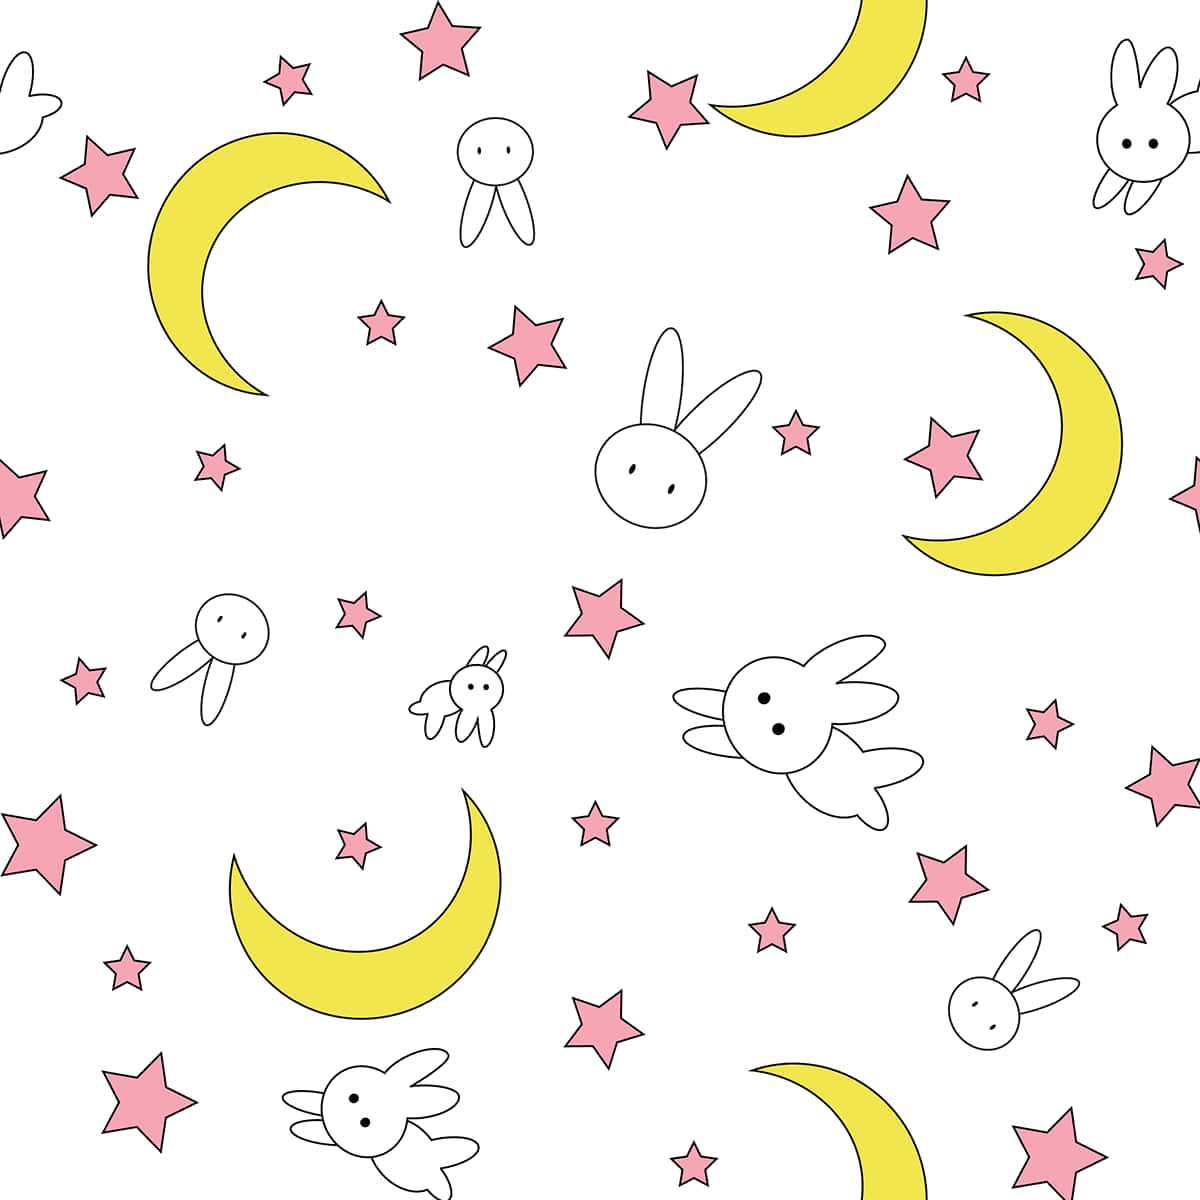 Modellocon Il Pattern Di Coniglietto Stellato Di Sailor Moon. Sfondo